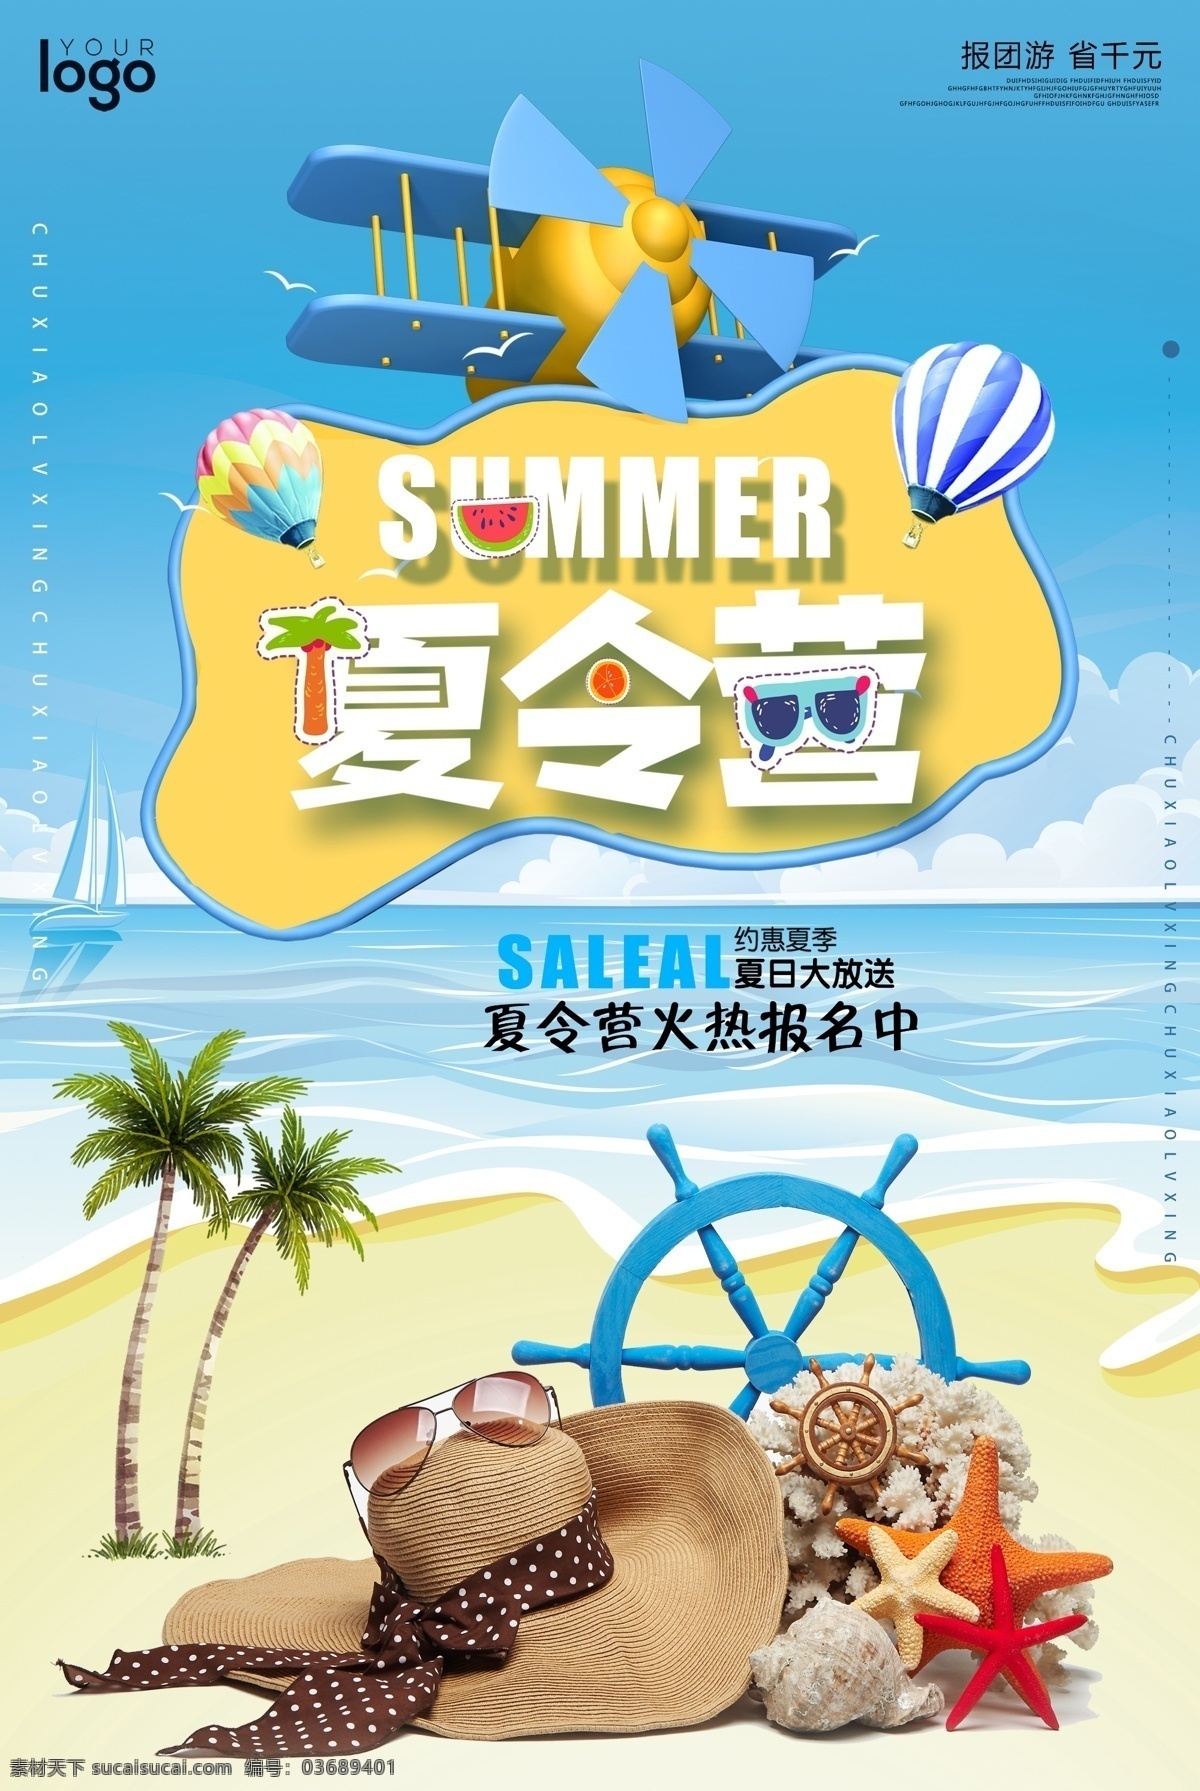 暑期 夏令营 海报 海边 大海 暑假 夏季 户外拓展 活动